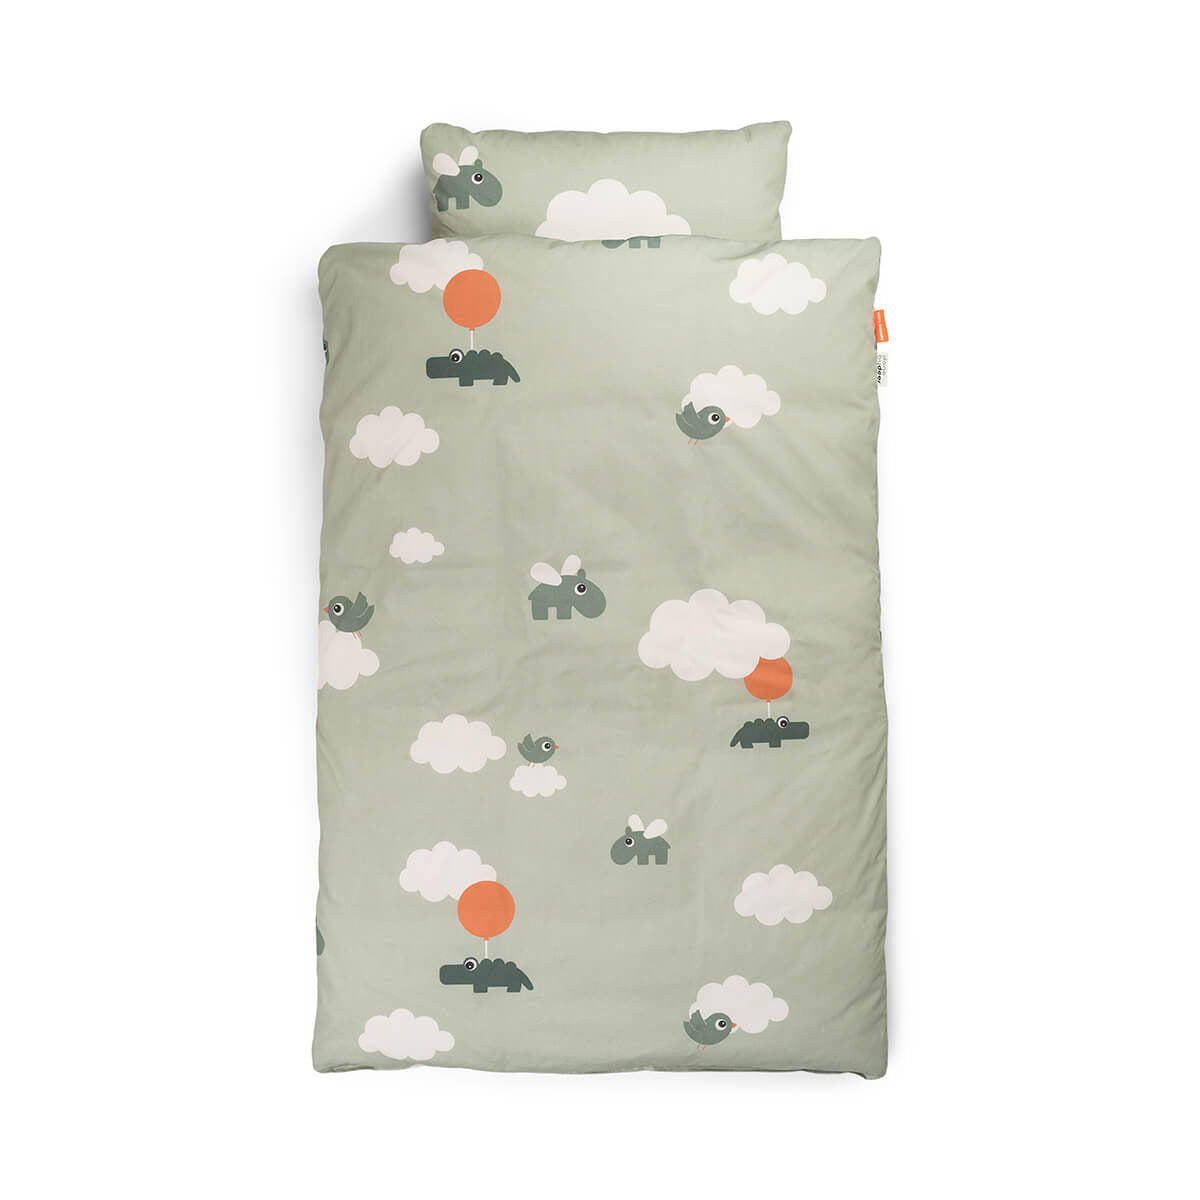 Met het superzachte en comfortabele Done by Deer beddengoed junior GOTS happy clouds green slaapt je kleintje als een roosje! Het groene kinderbeddengoed met wolken en ballonnen voelt fijn aan. VanZus